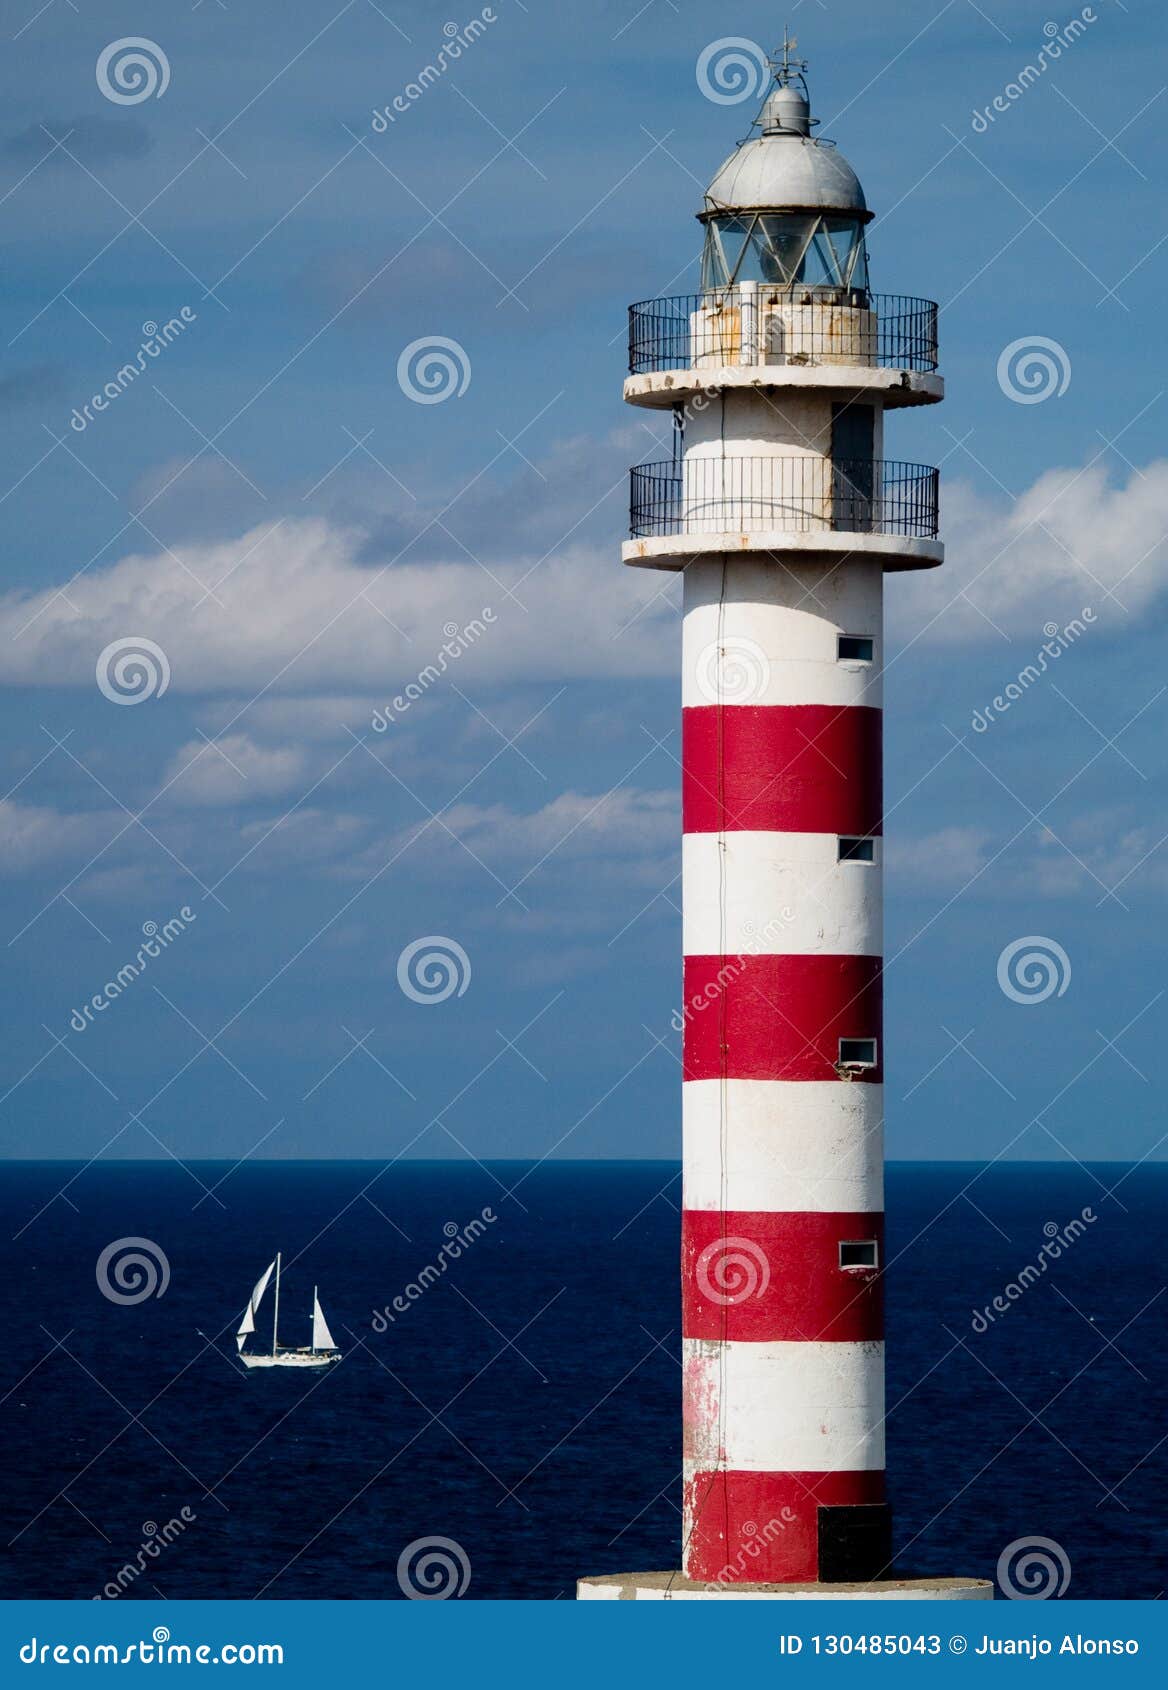 lighthouse of sardina del norte de gran canaria